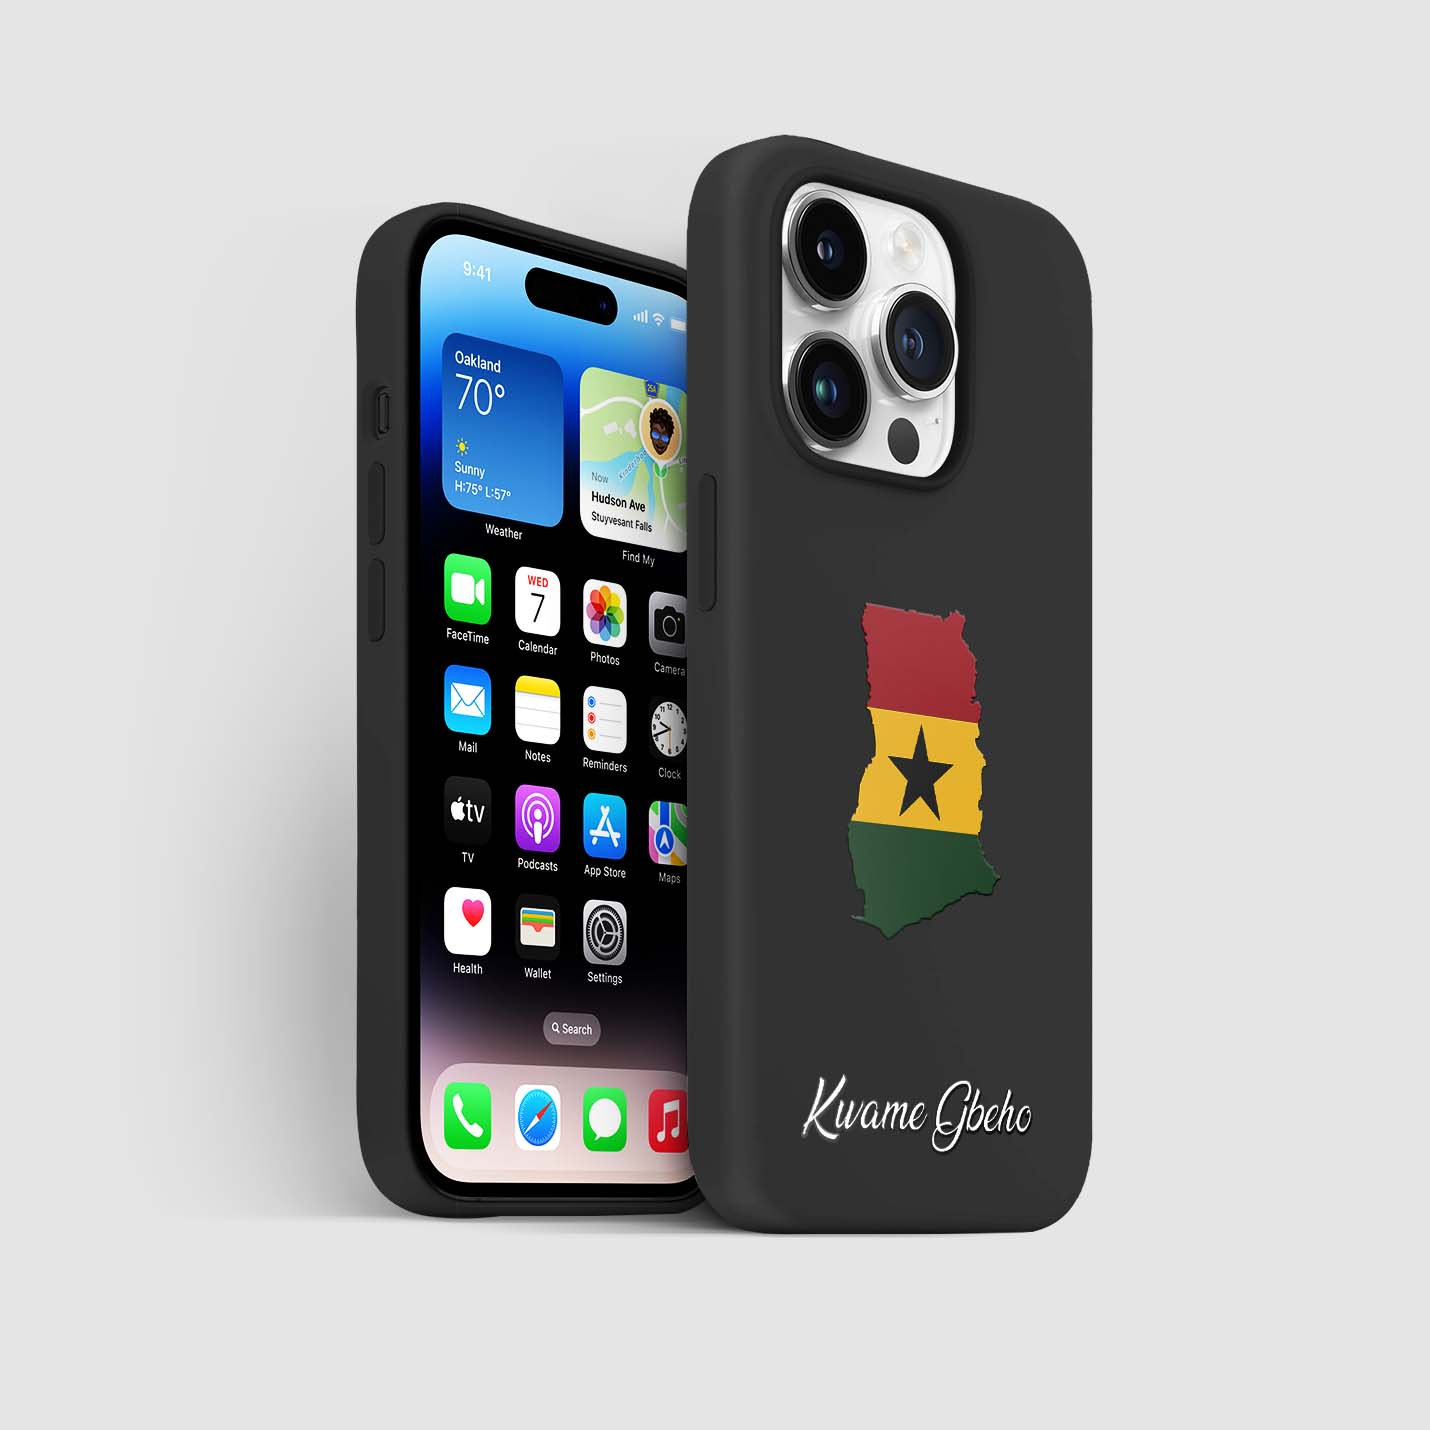 Handyhüllen mit Flagge - Ghana - 1instaphone